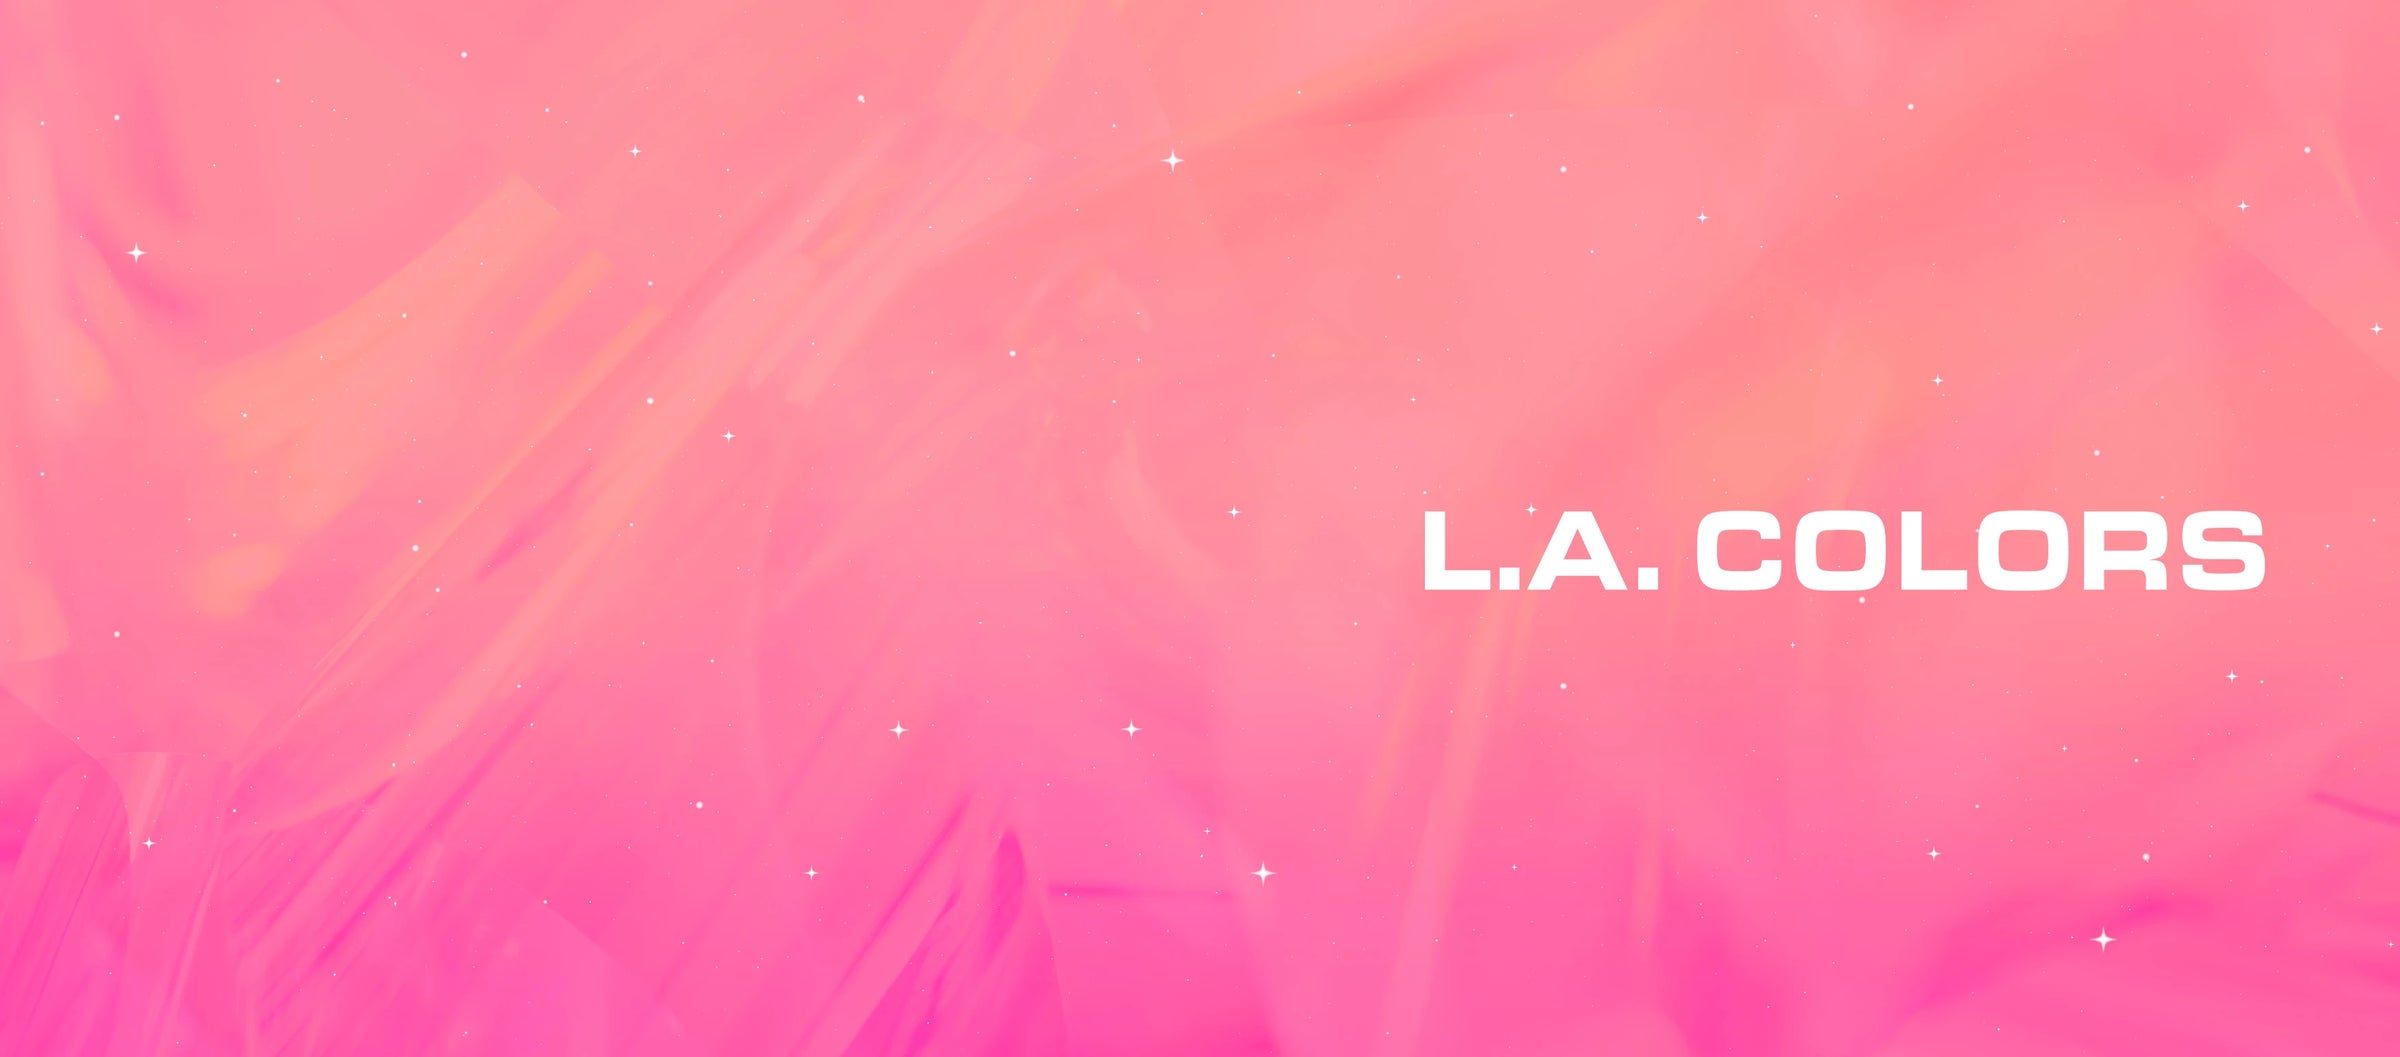 L.A. Colors